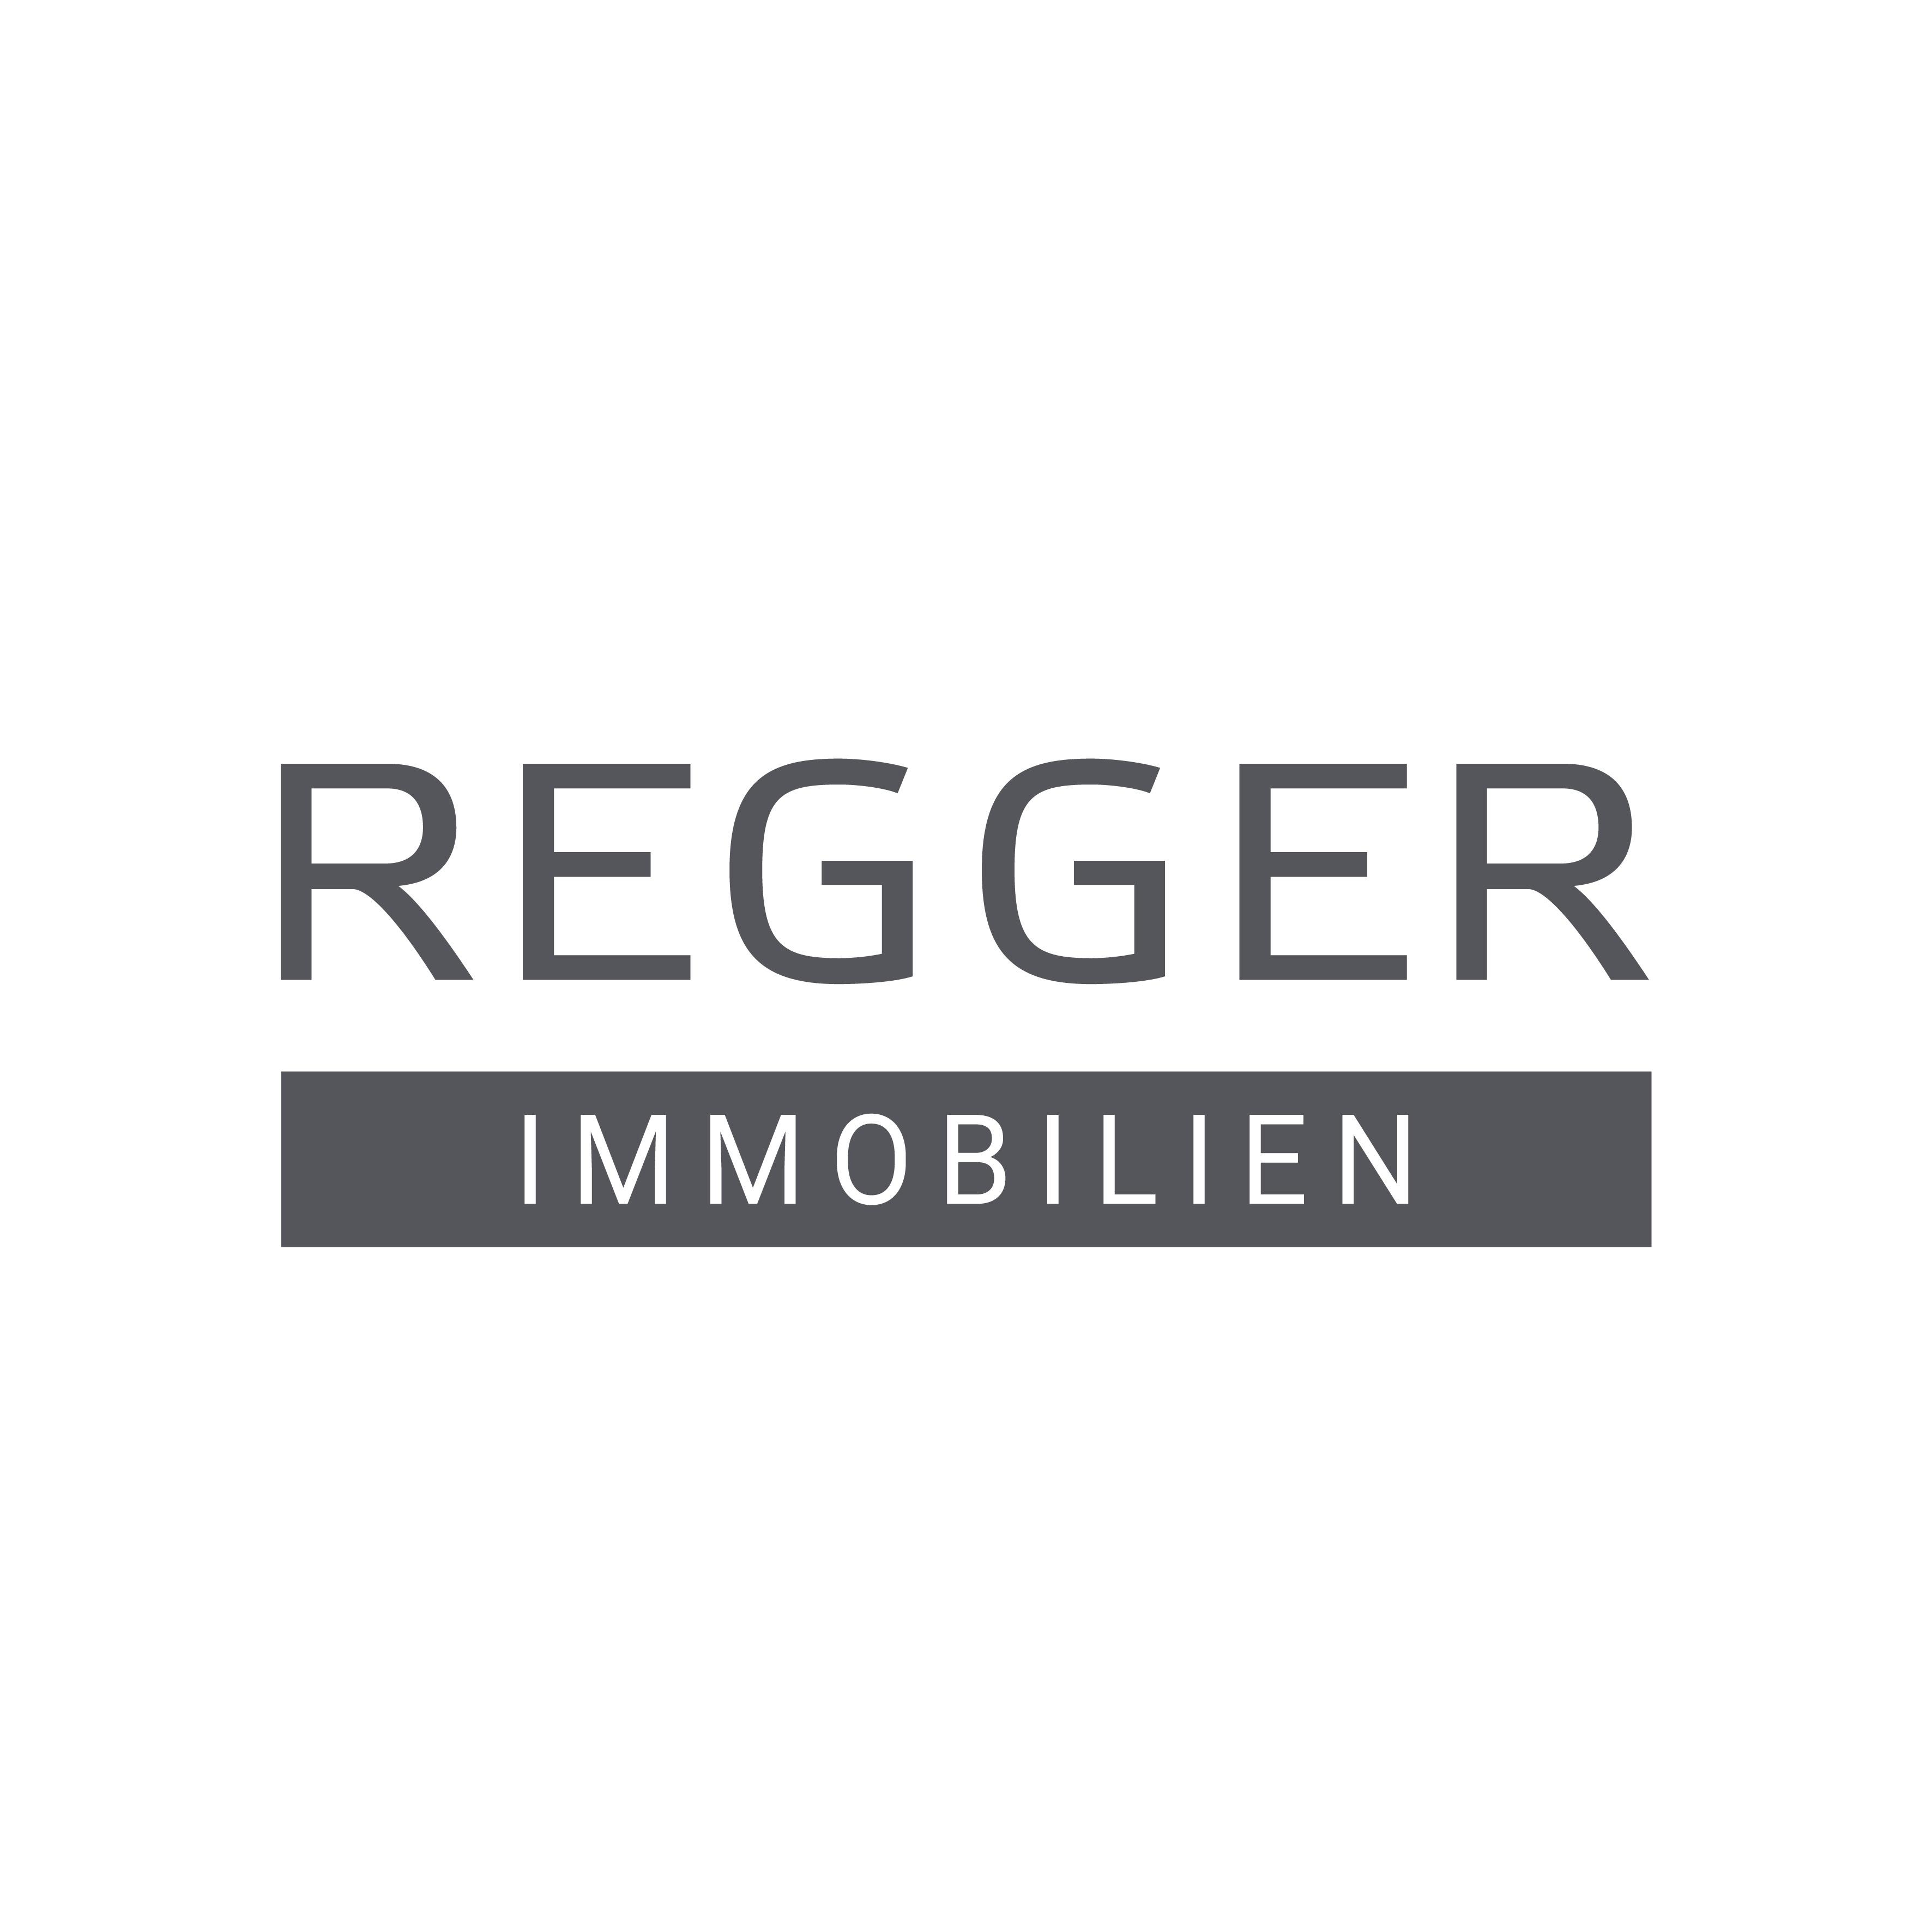 REGGER IMMOBILIEN Logo